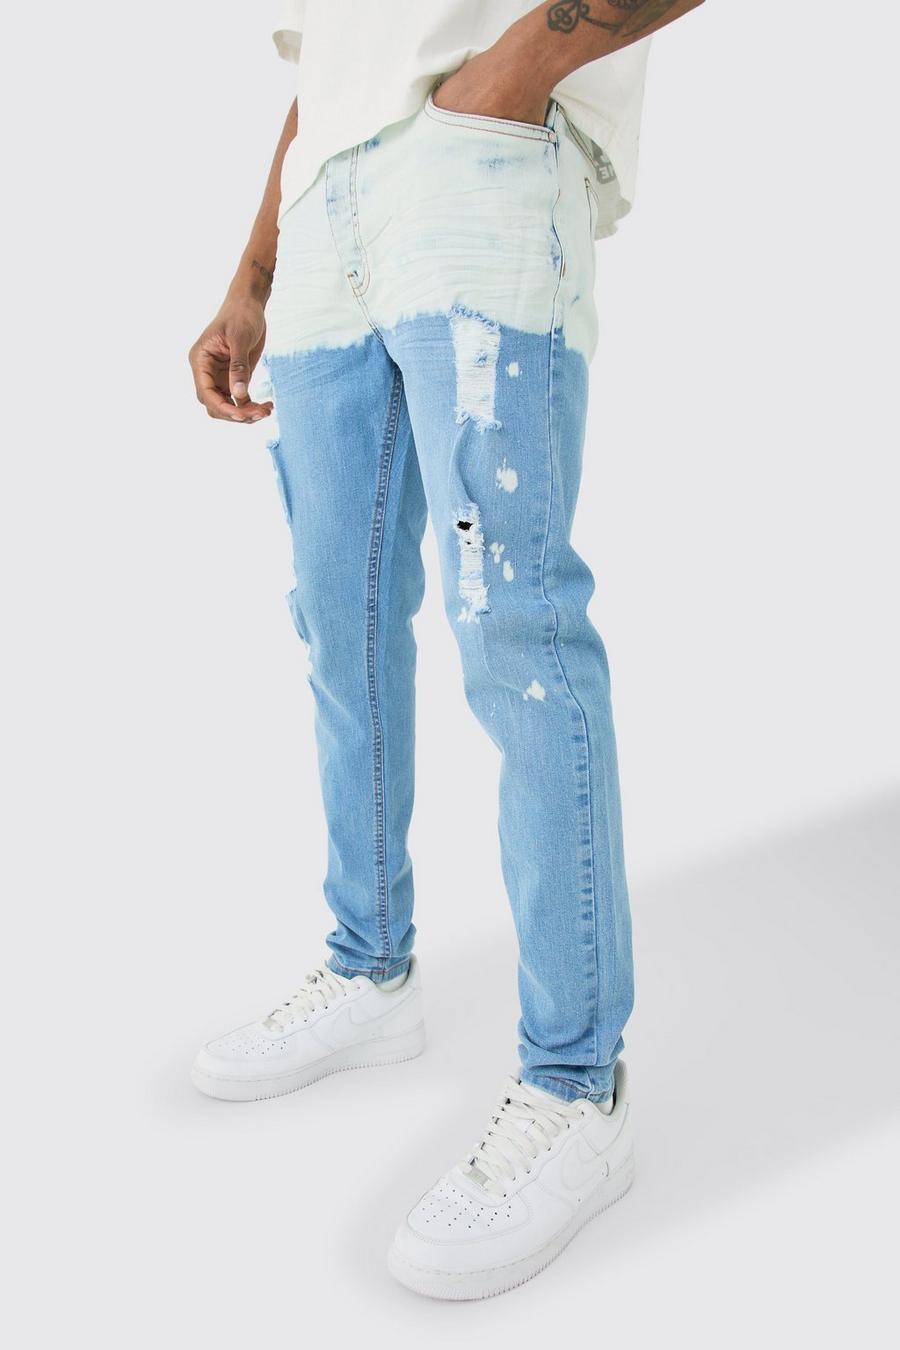 Jeans Tall Skinny Fit Stretch in lavaggio chiaro effetto vernice, Light wash